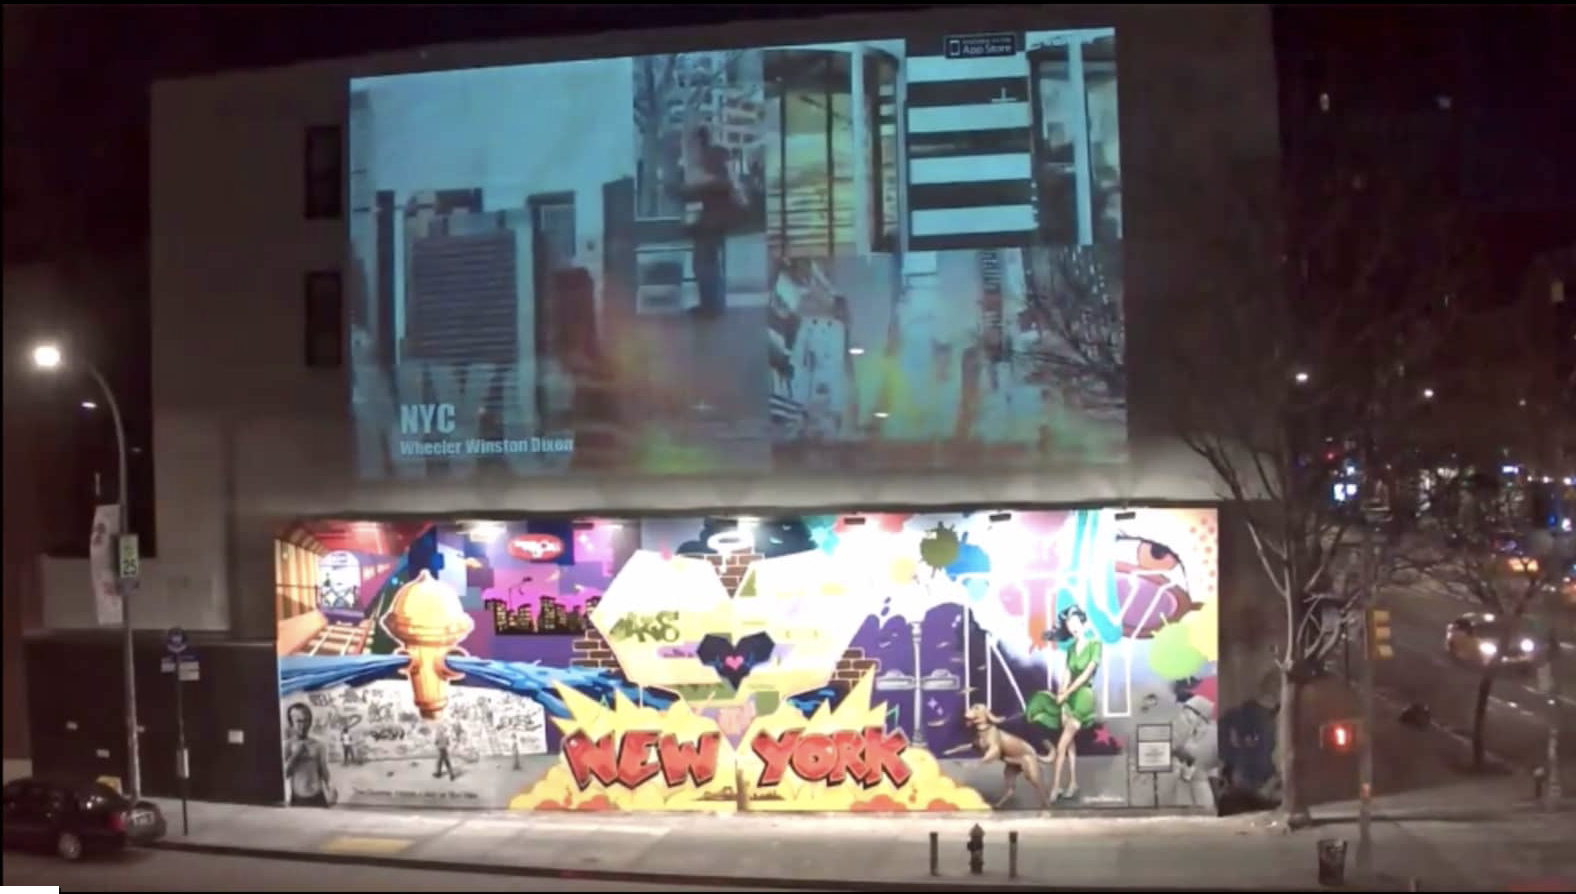 Walltime art installation in New York City